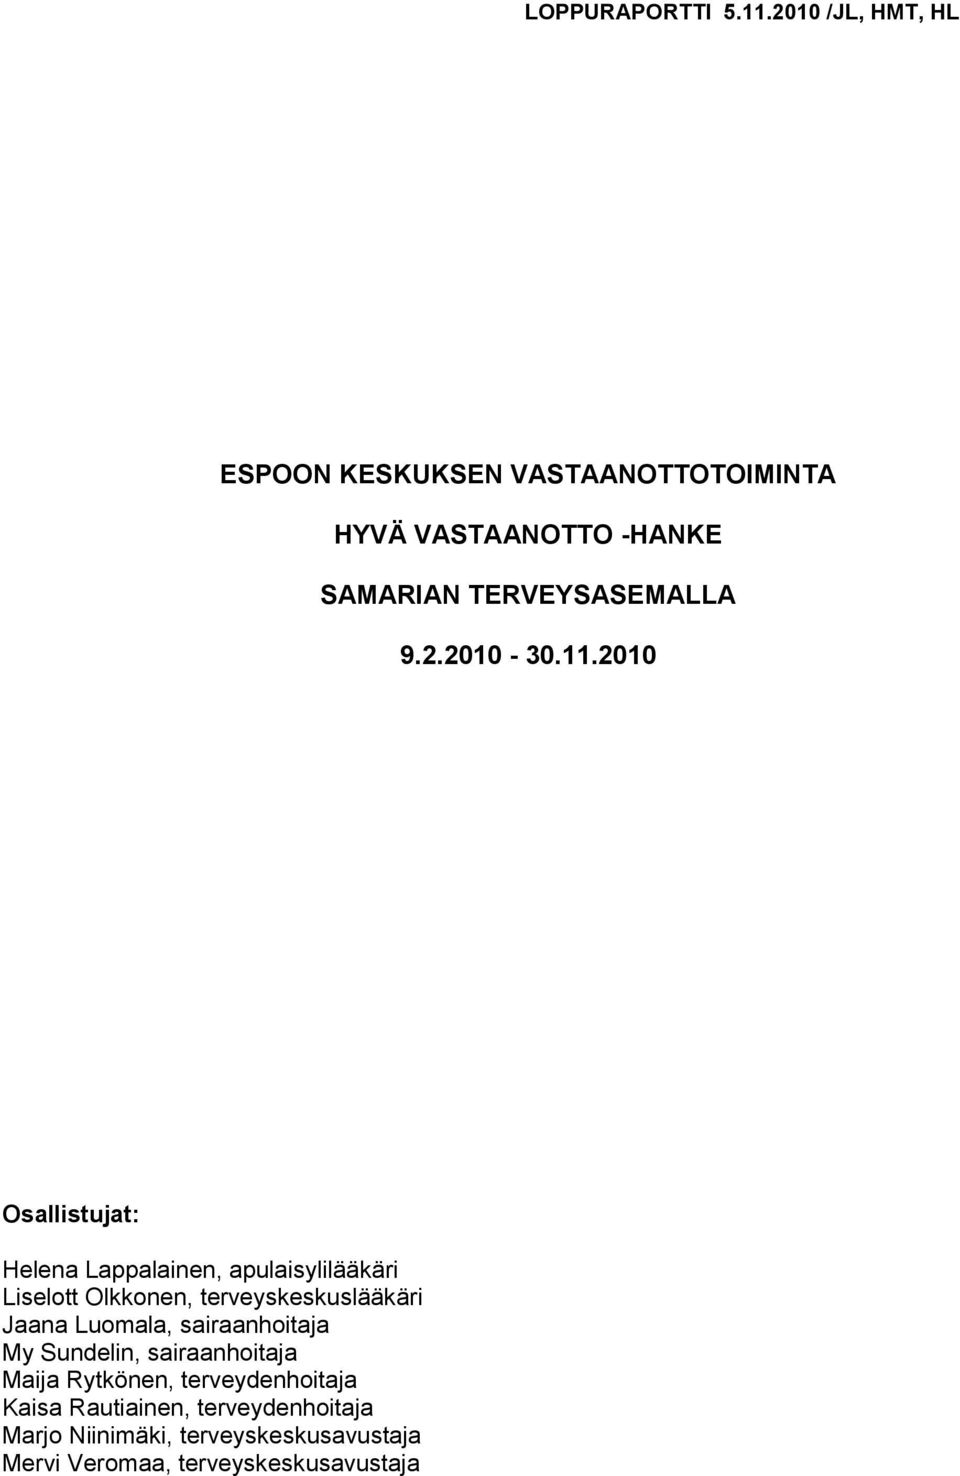 11.2010 Osallistujat: Helena Lappalainen, apulaisylilääkäri Liselott Olkkonen, terveyskeskuslääkäri Jaana